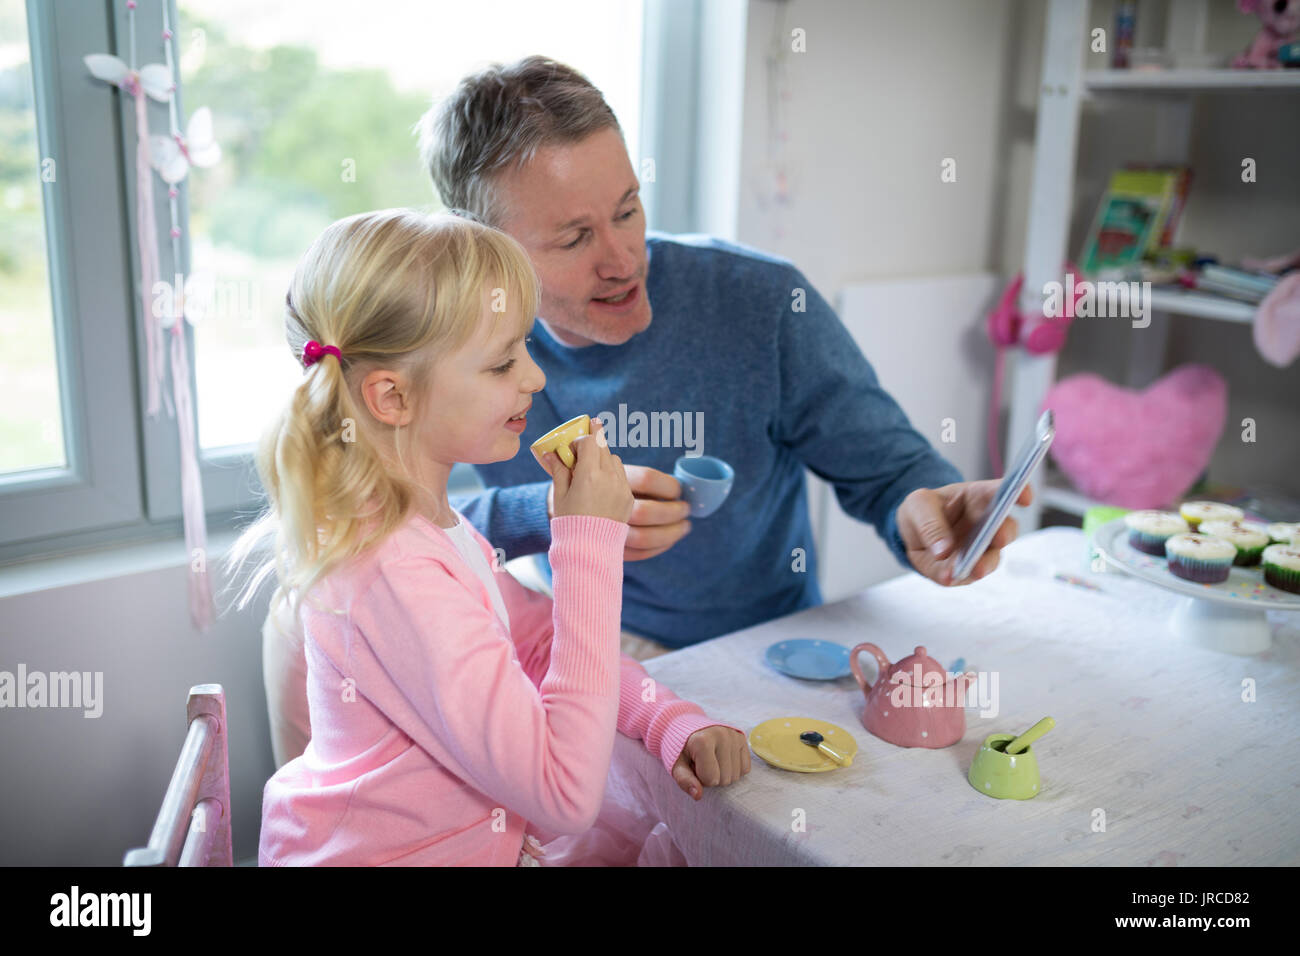 Jeune fille enjouée et père de prendre un en jouant avec un selfies toy Set de cuisine Banque D'Images